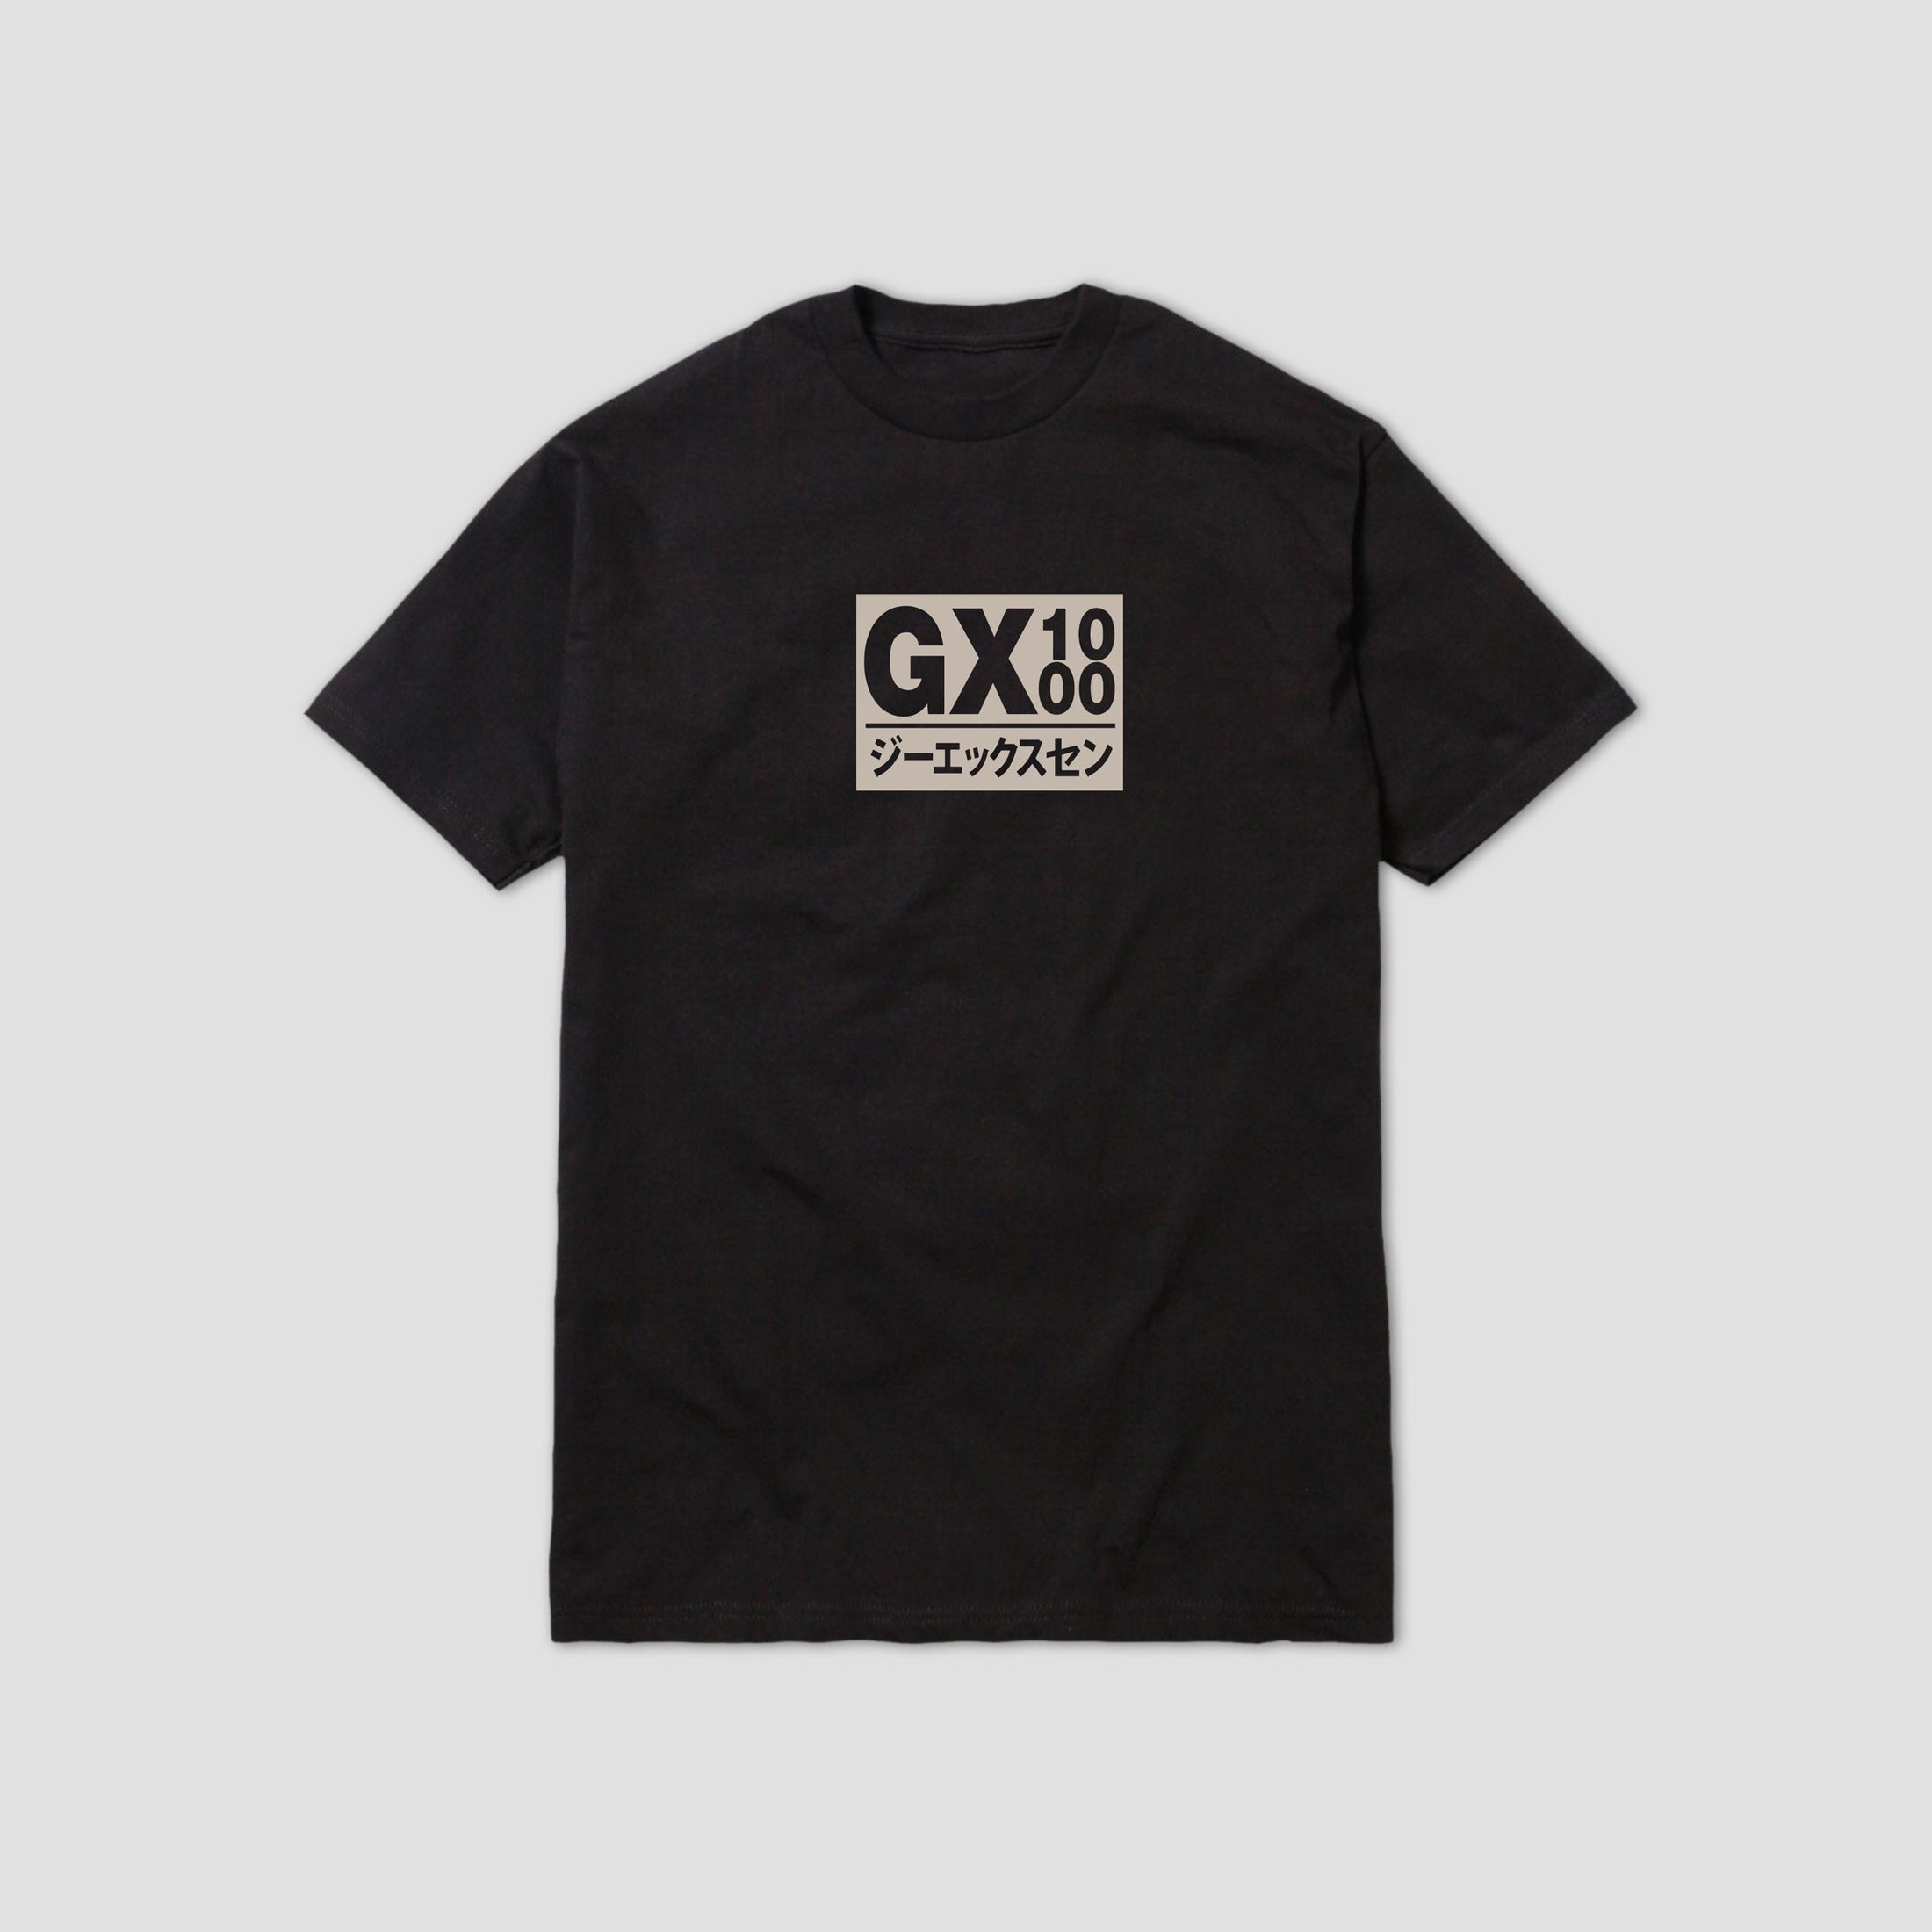 GX1000 Japan T-Shirt Black